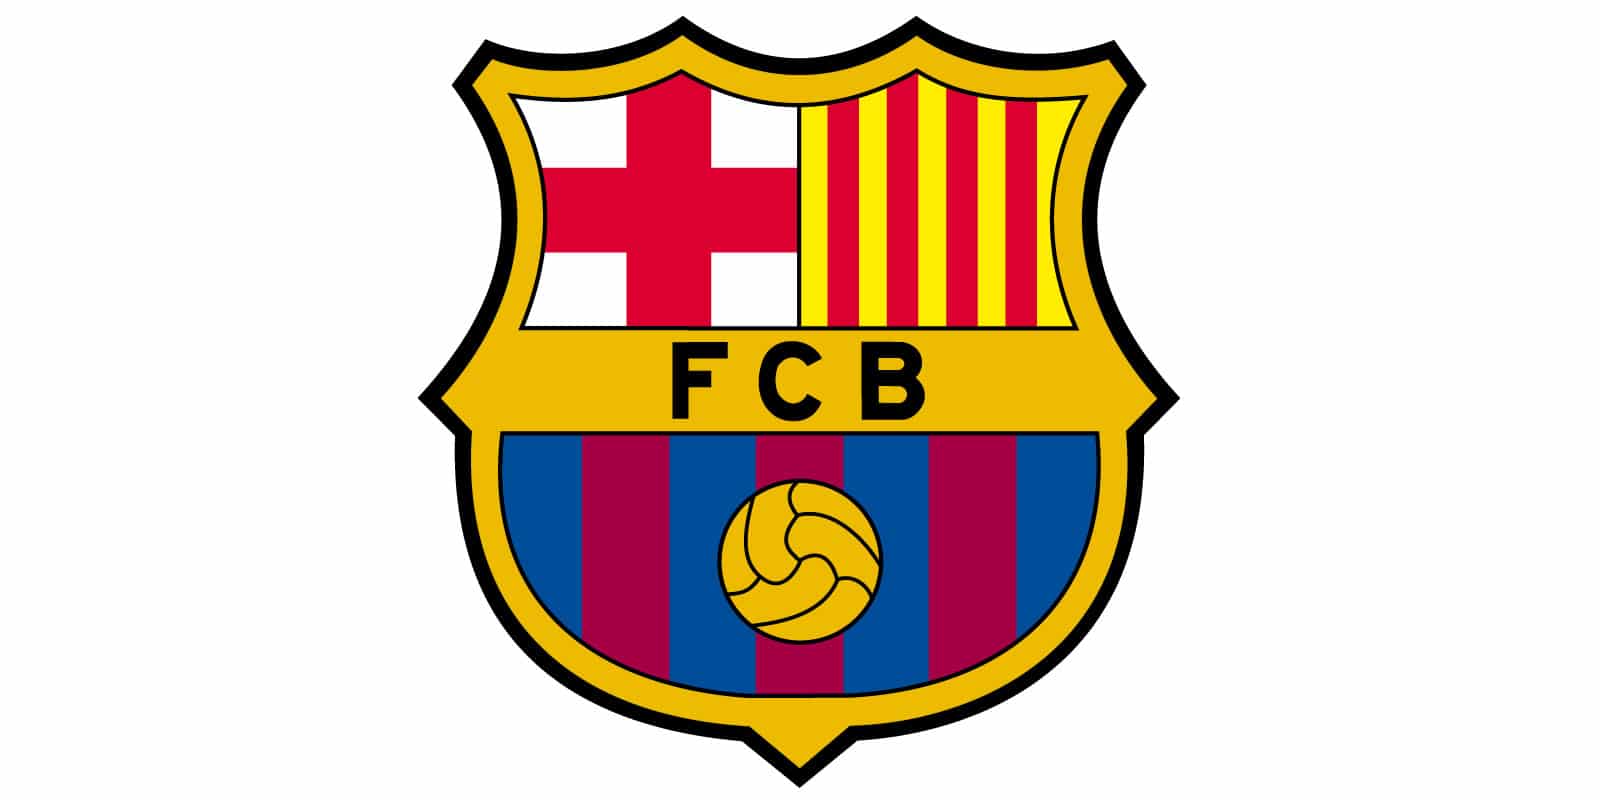 FC Barcelona logo (FCB)